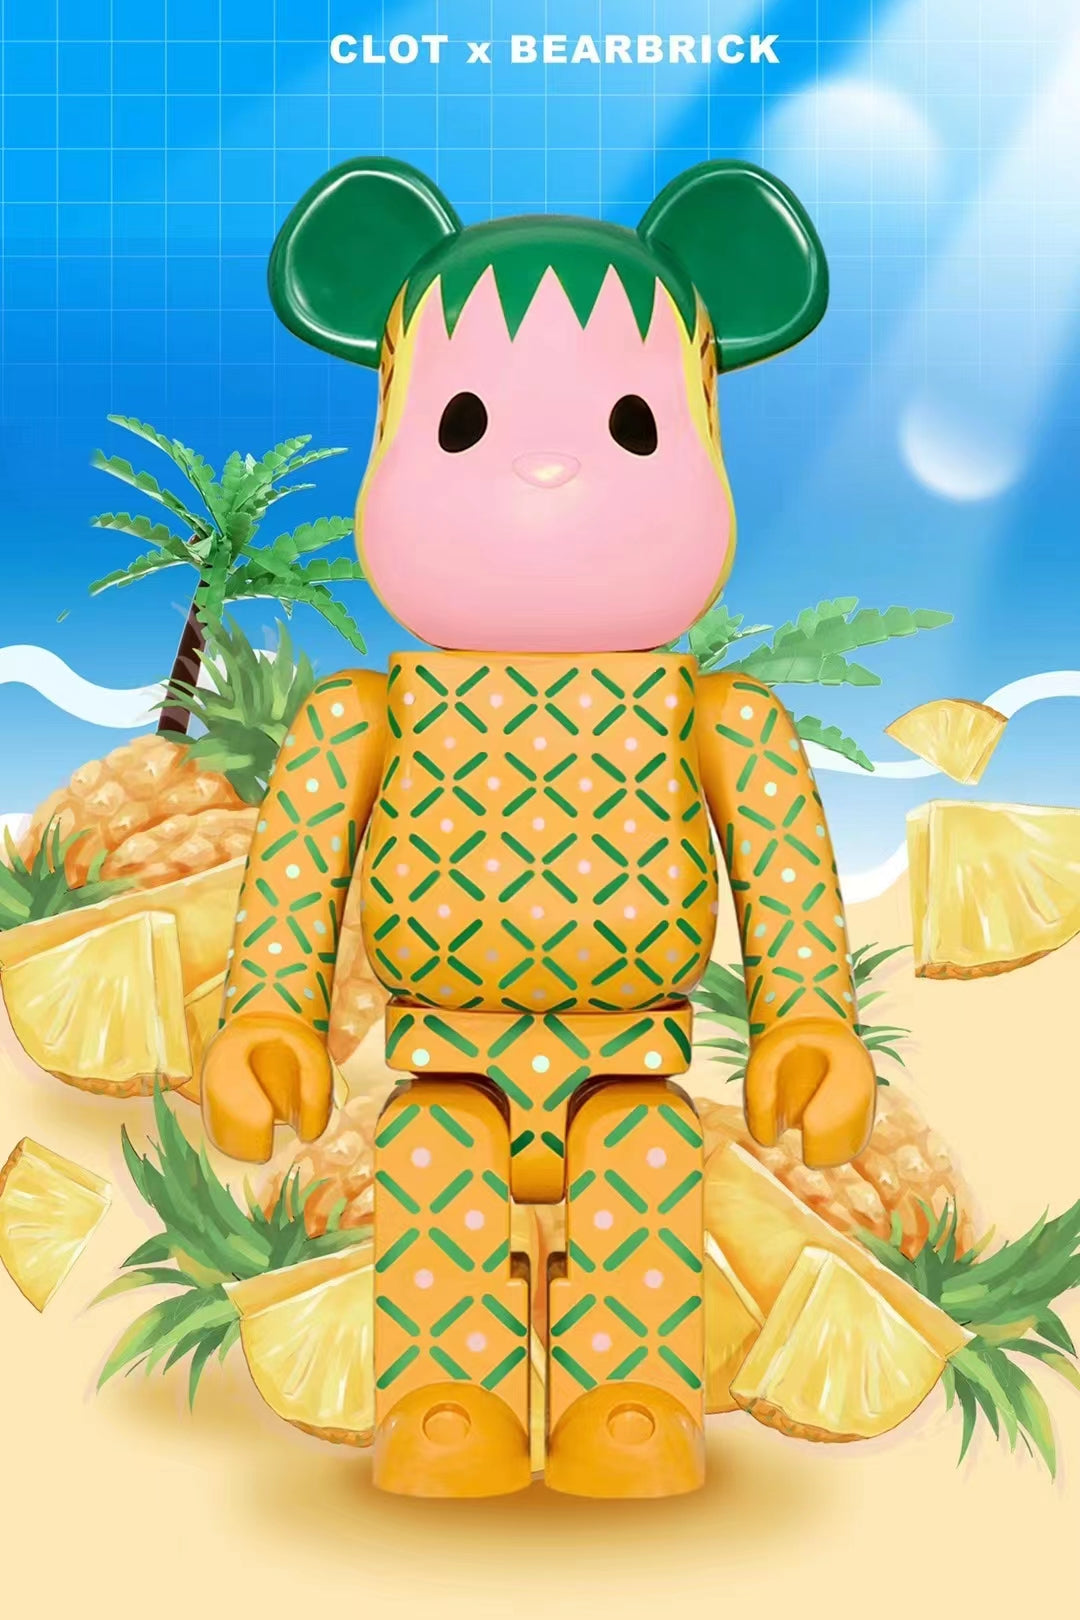 Bearbrick x CLOT Summer Fruits Pink Pineapple 1000% - US